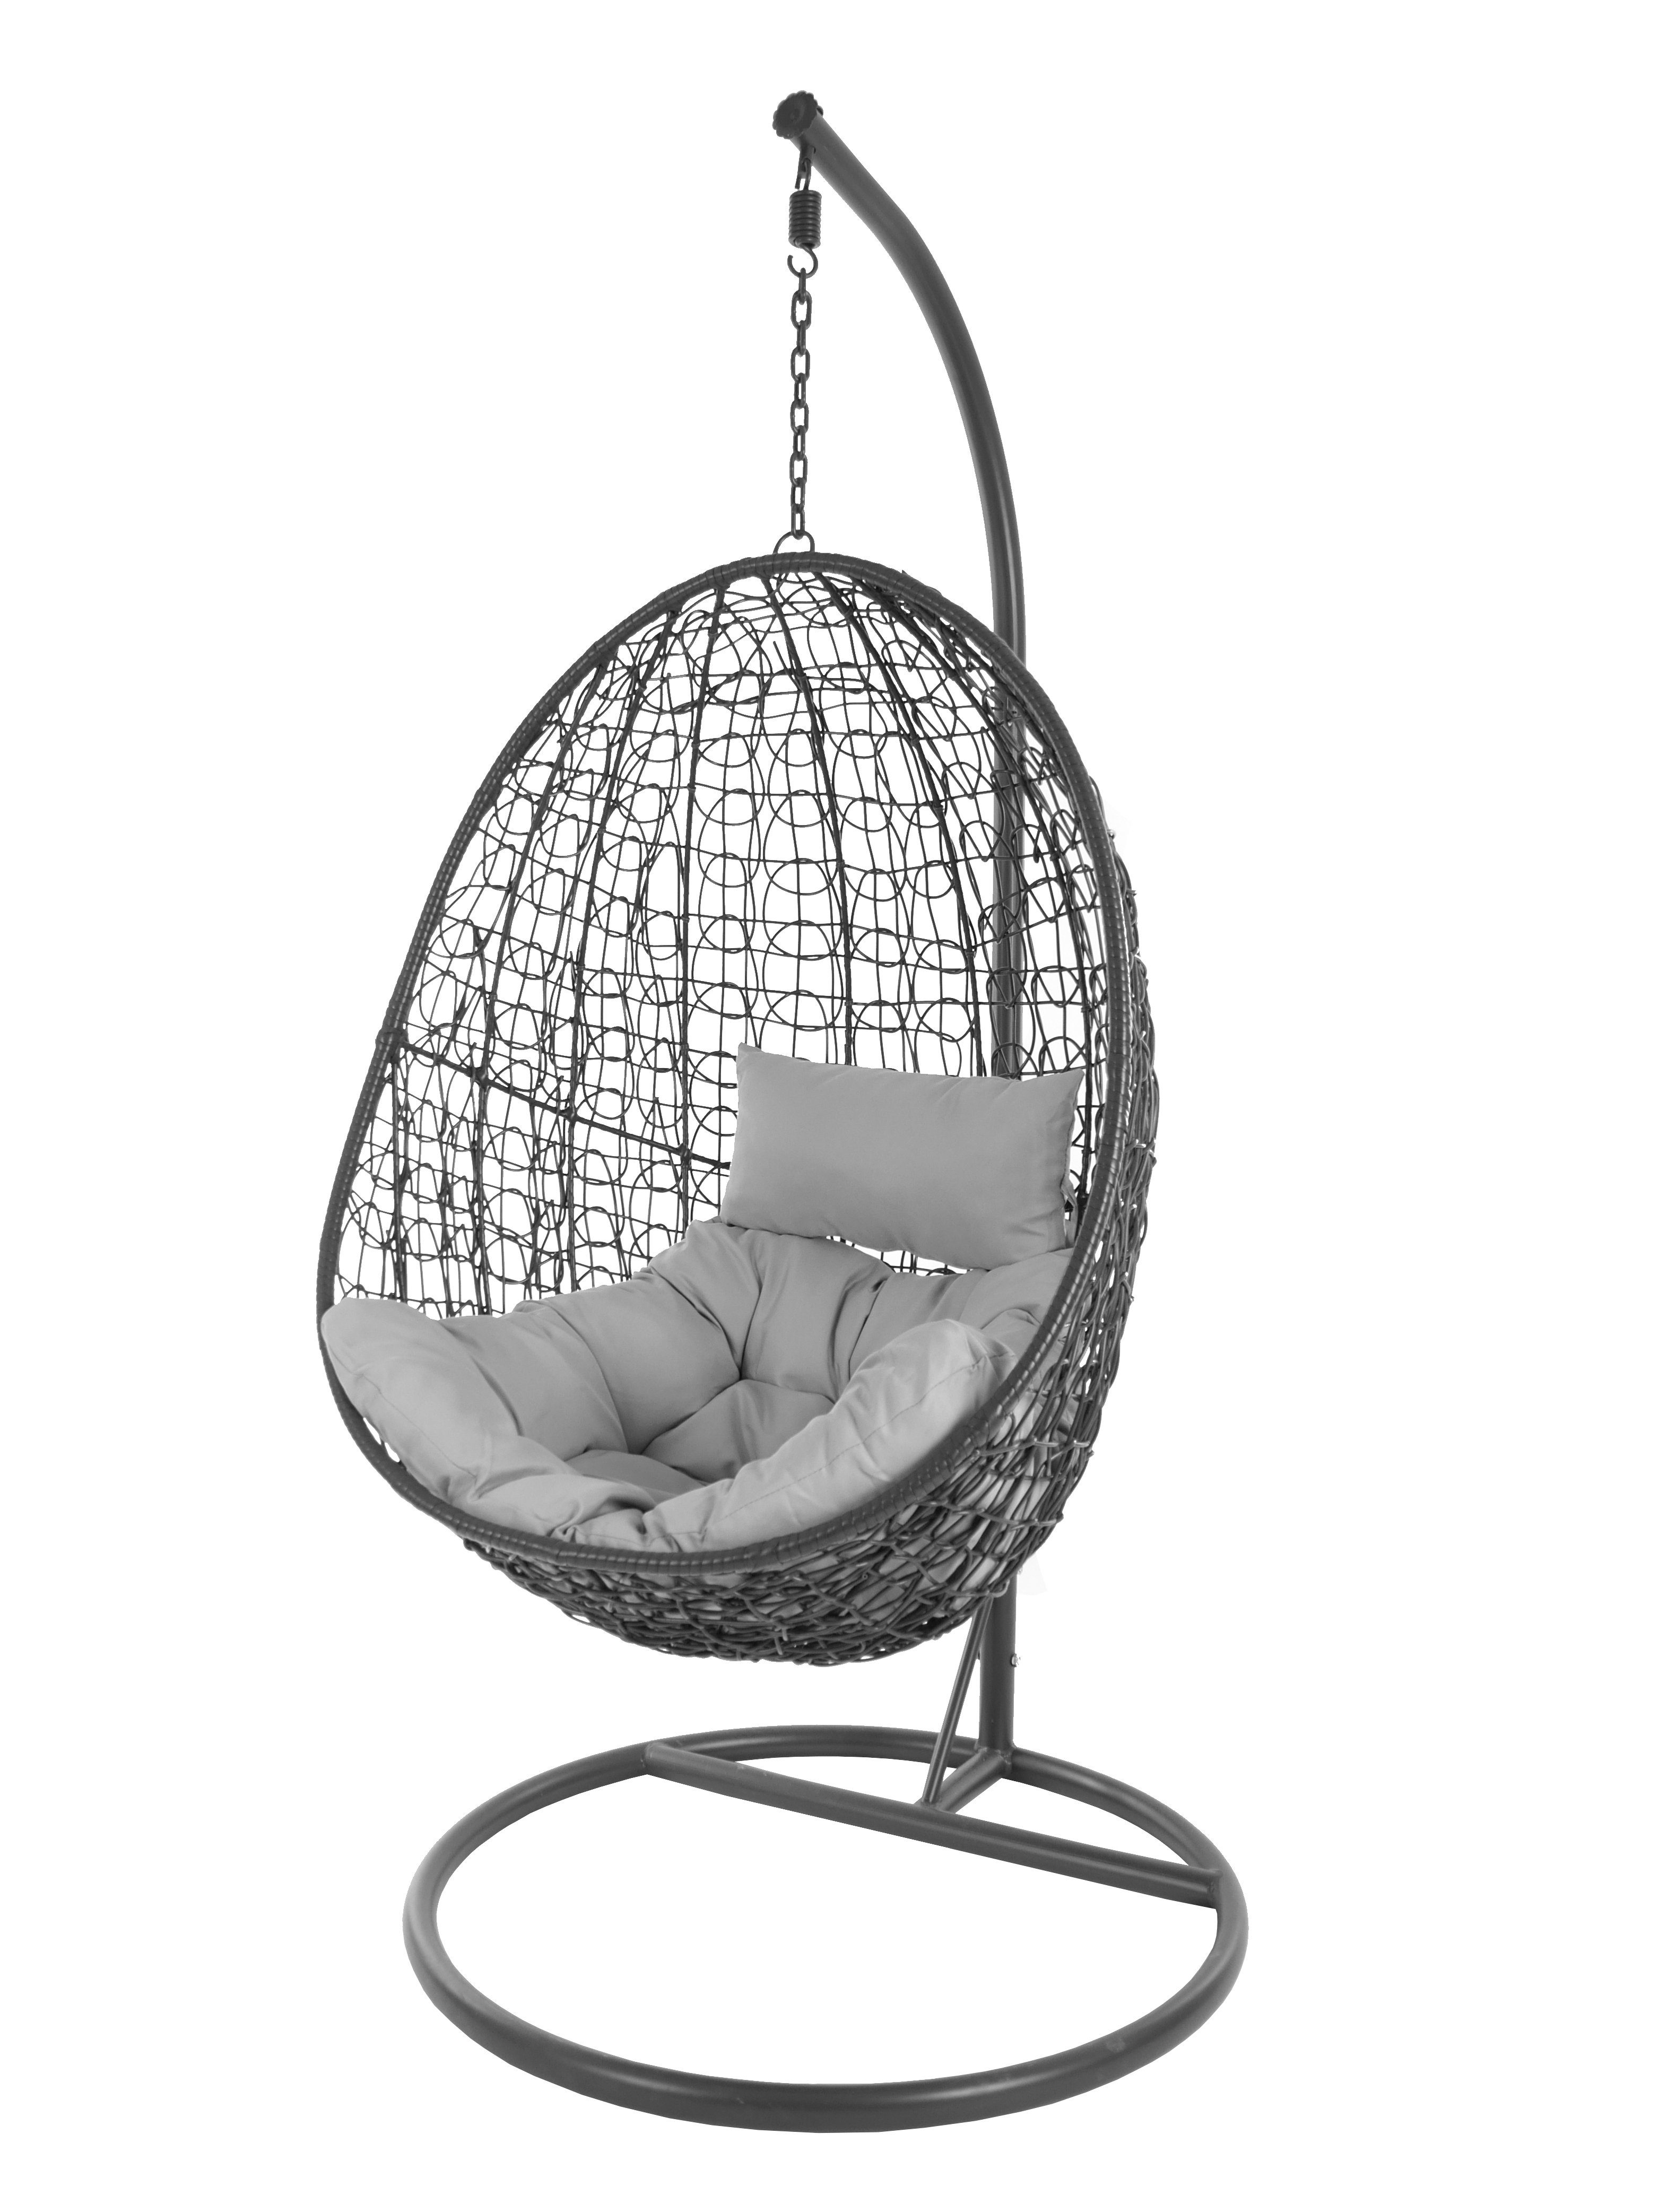 KIDEO Hängesessel Hängesessel Capdepera anthrazit, moderner Swing Chair, Schwebesessel mit Gestell und Kissen, Loungemöbel grau (8008 cloud)